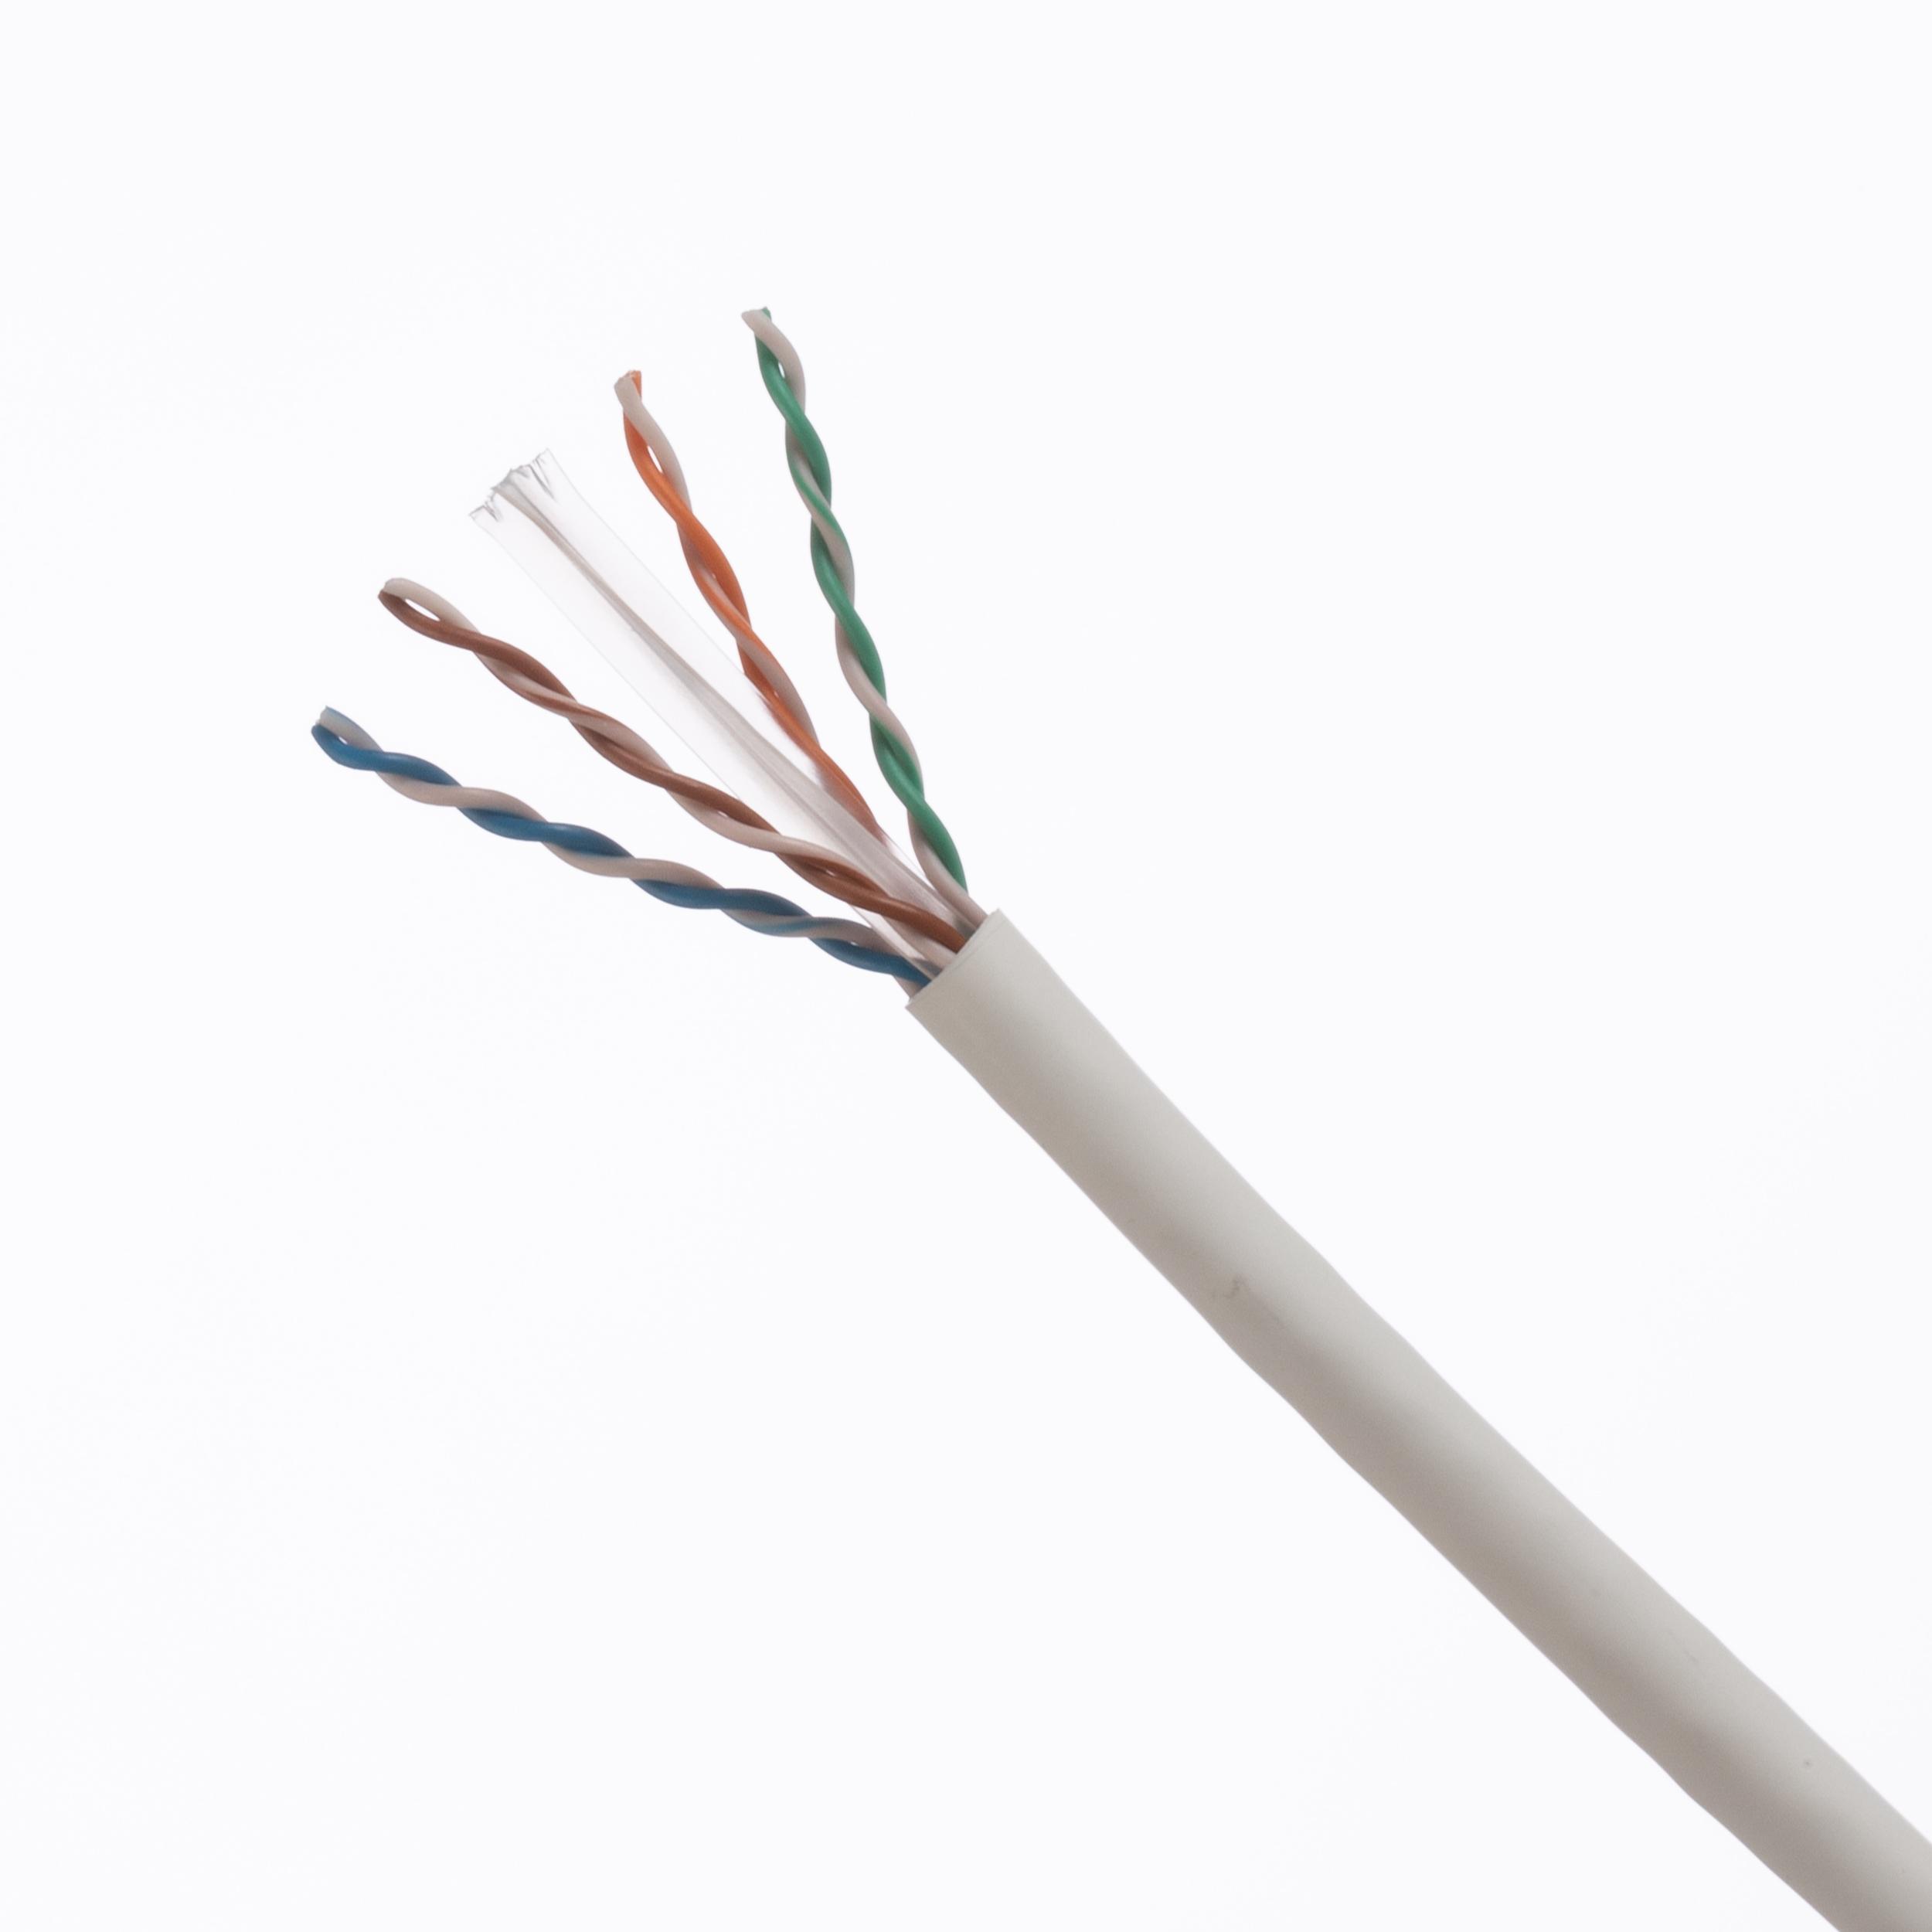 Panduit PUP6004OR-FLP Pan-Net® Copper Cable